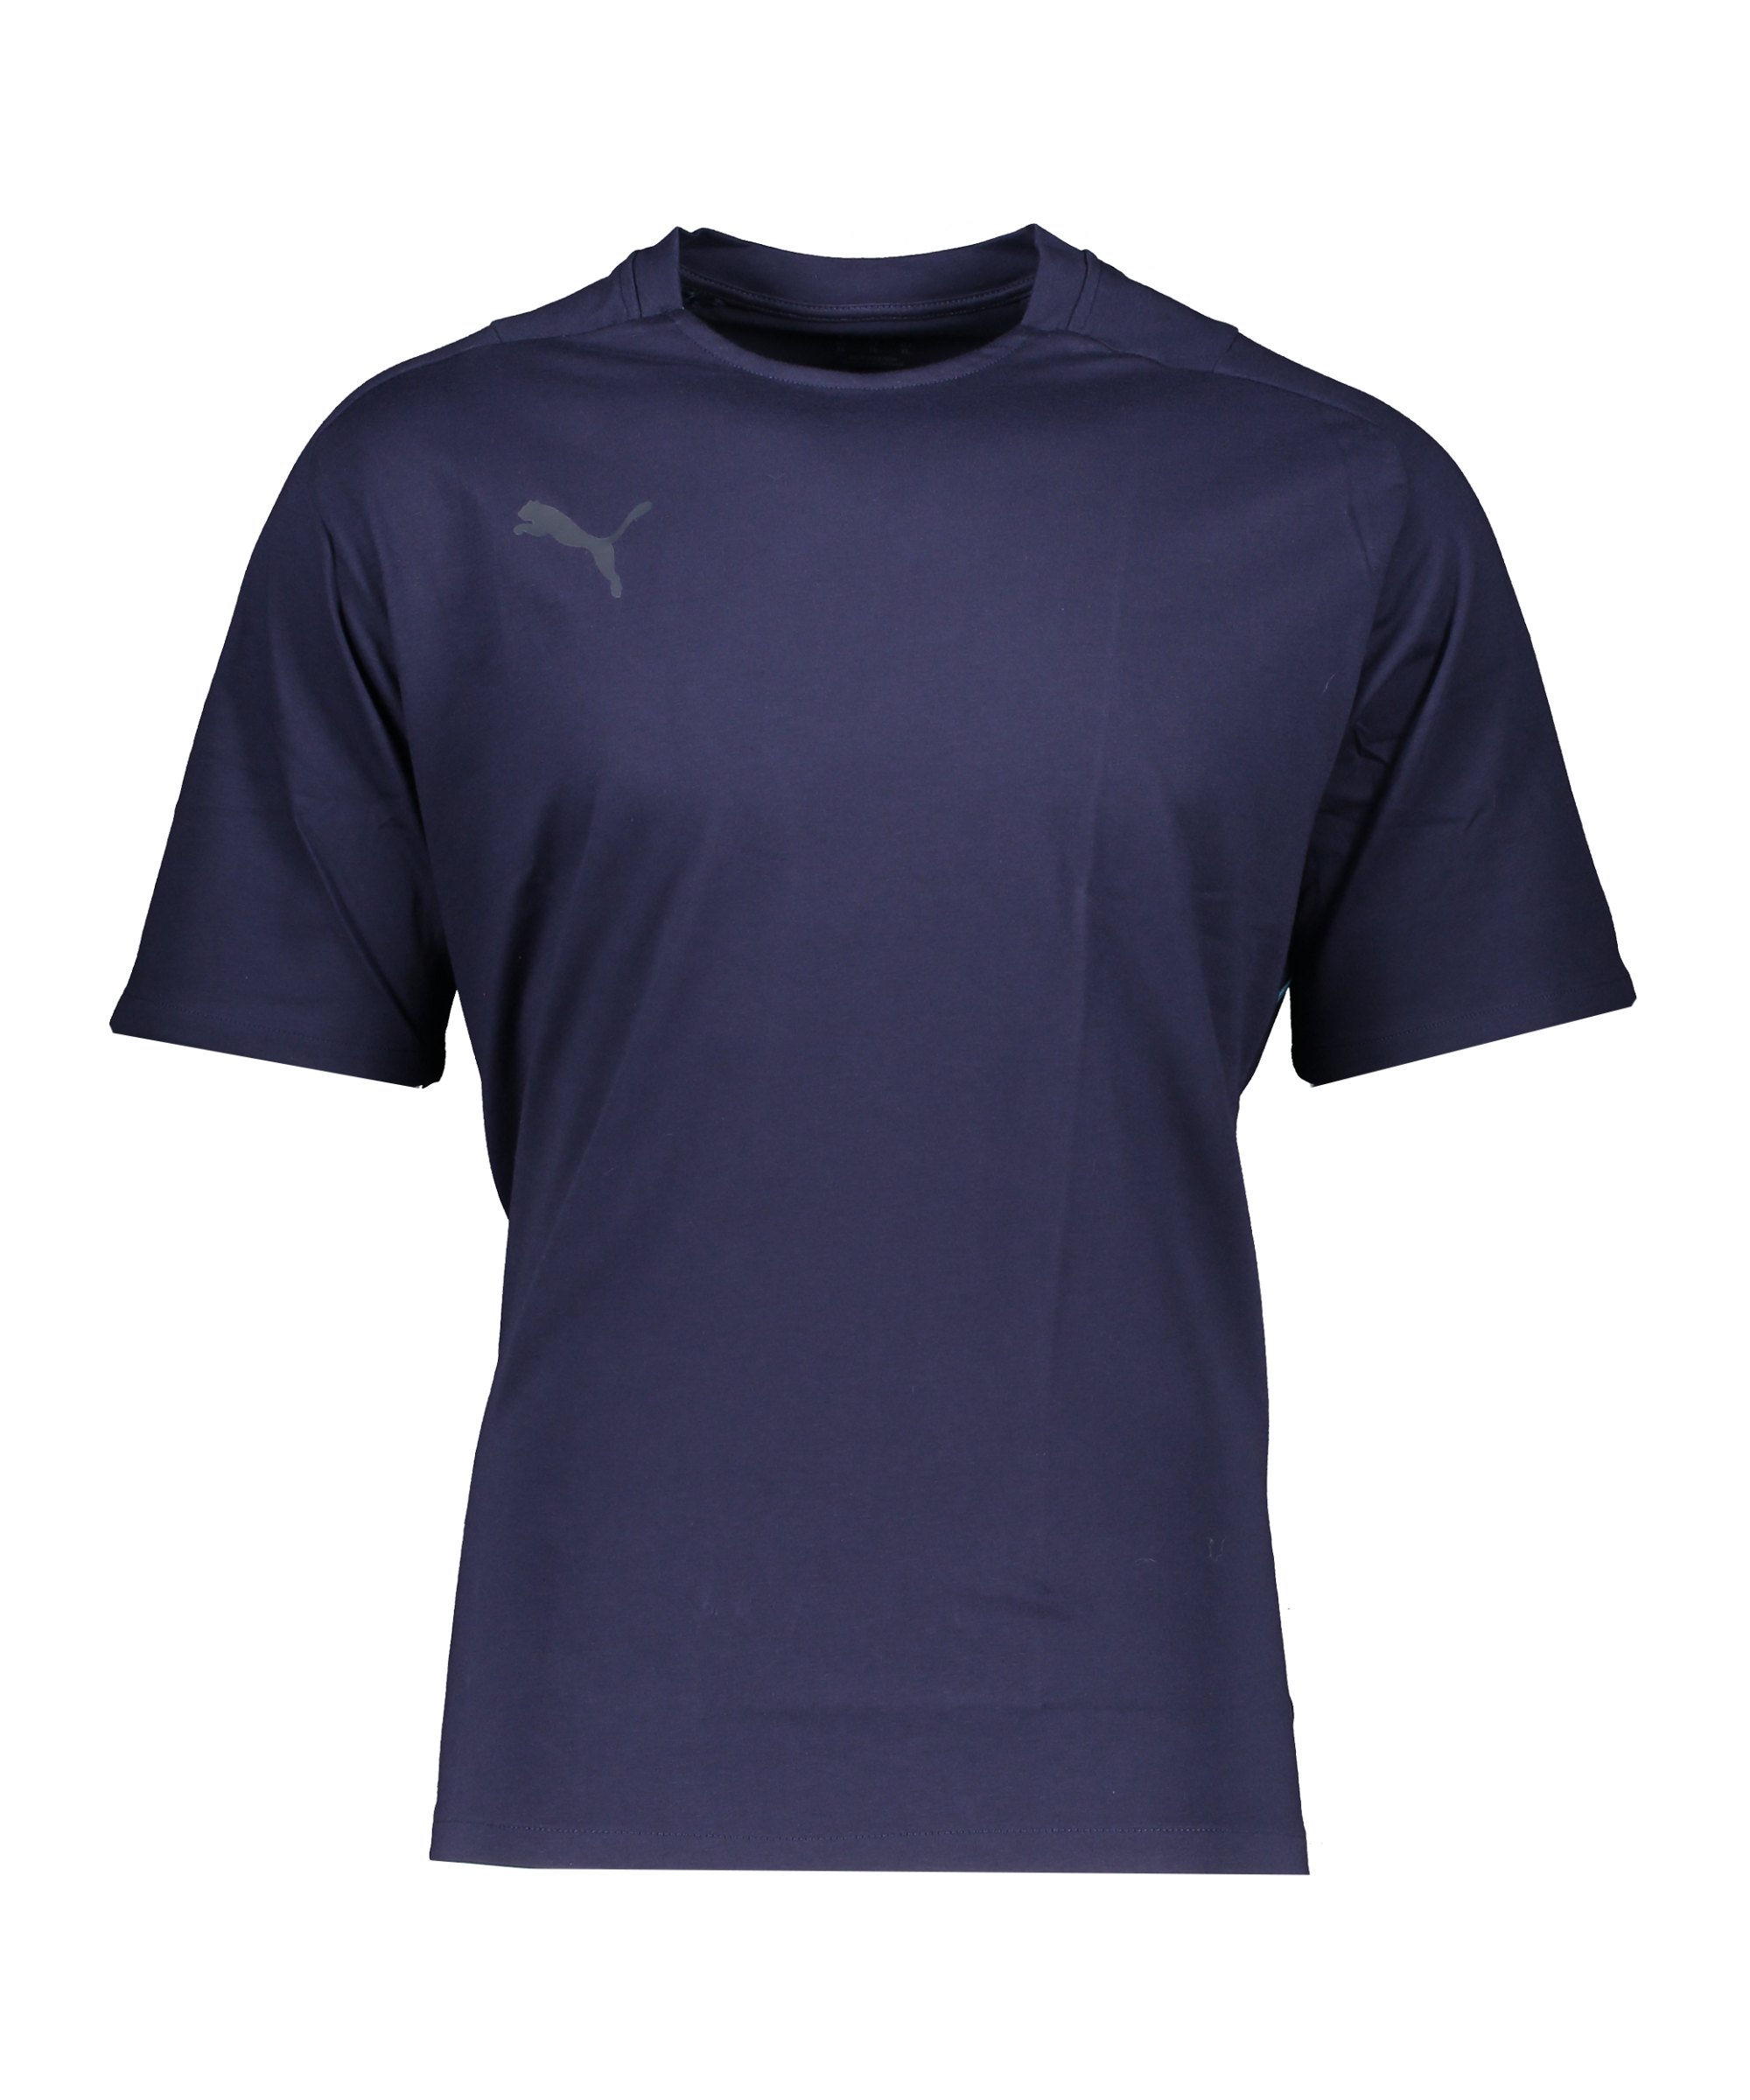 PUMA teamCUP Casuals T-Shirt Blau F02 - blau